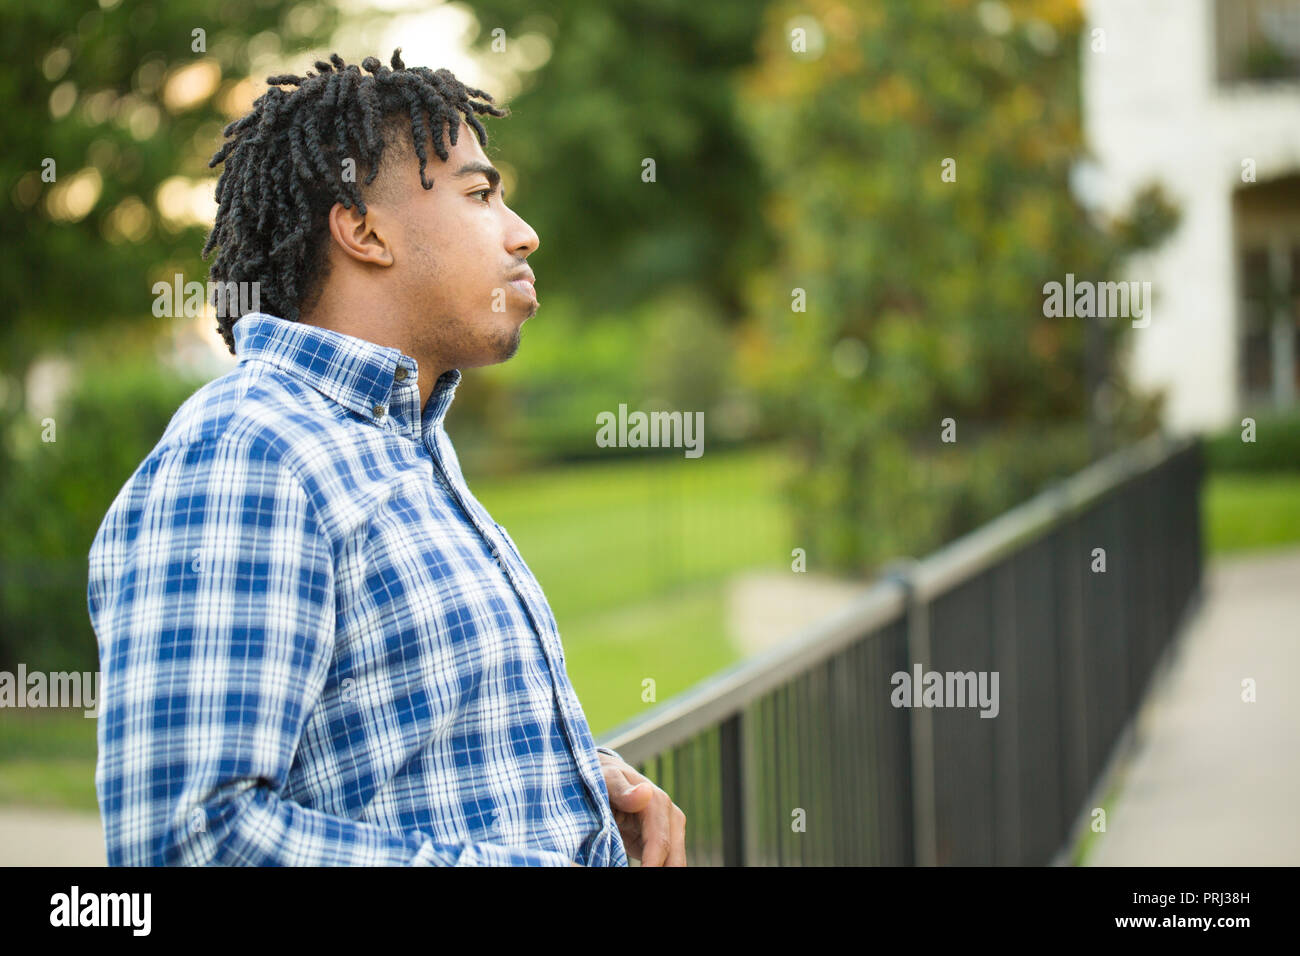 Junge afrikanische amerikanische Mann tief in Gedanken. Stockfoto